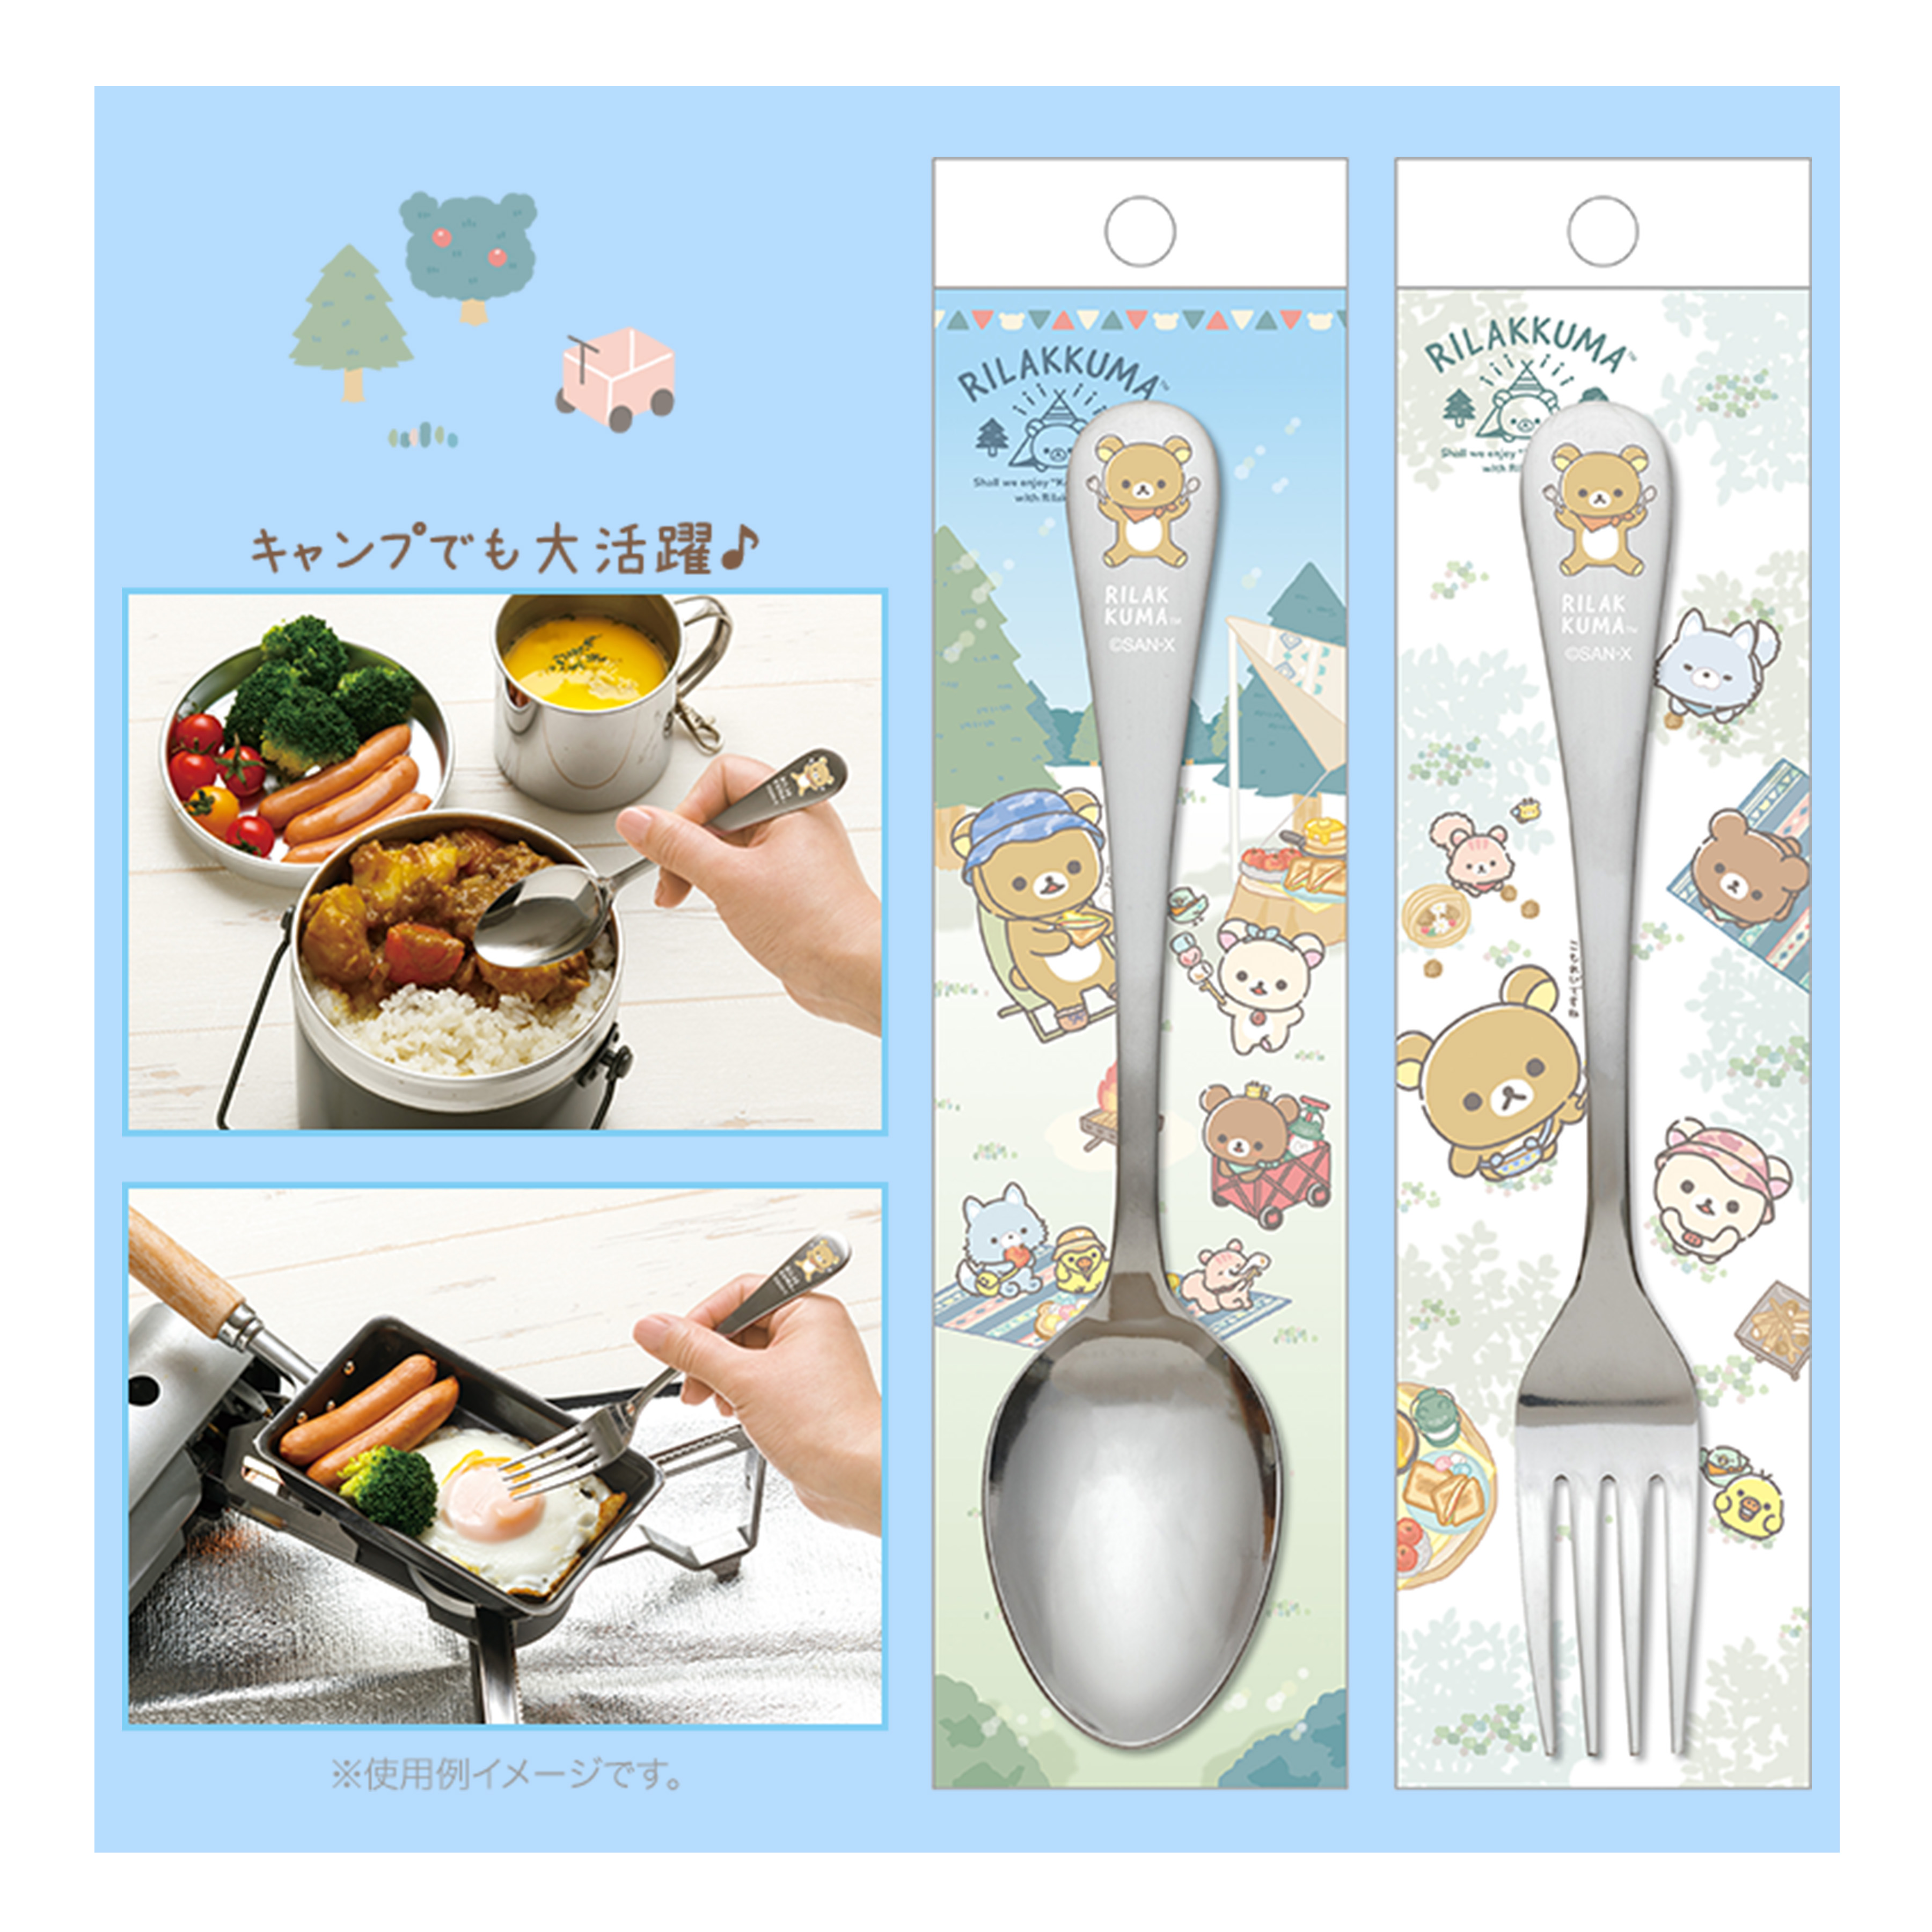 不鏽鋼湯匙&叉子-拉拉熊 Rilakkuma san-x 日本進口正版授權